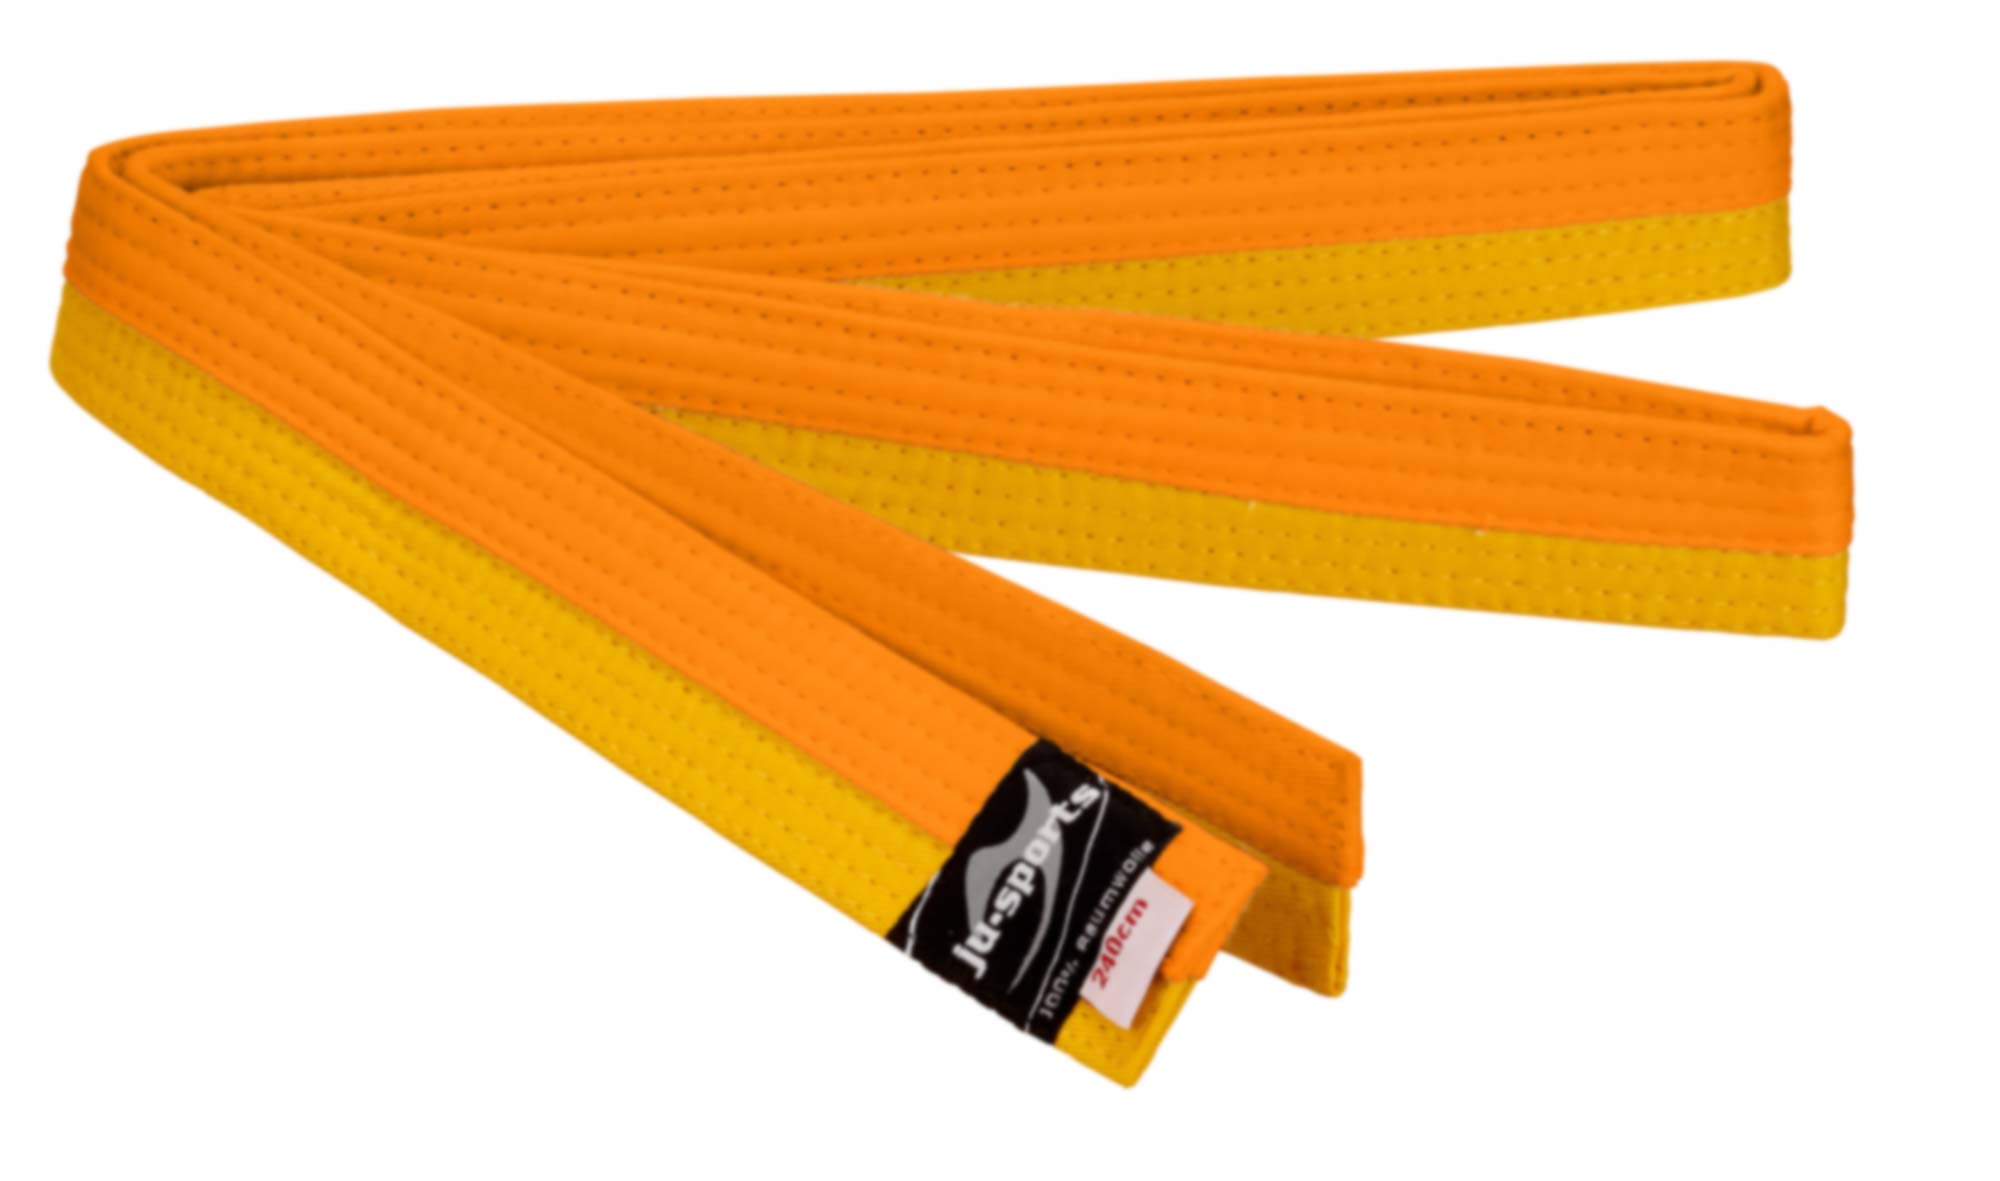 Ju-Sports budo belt yellow/orange